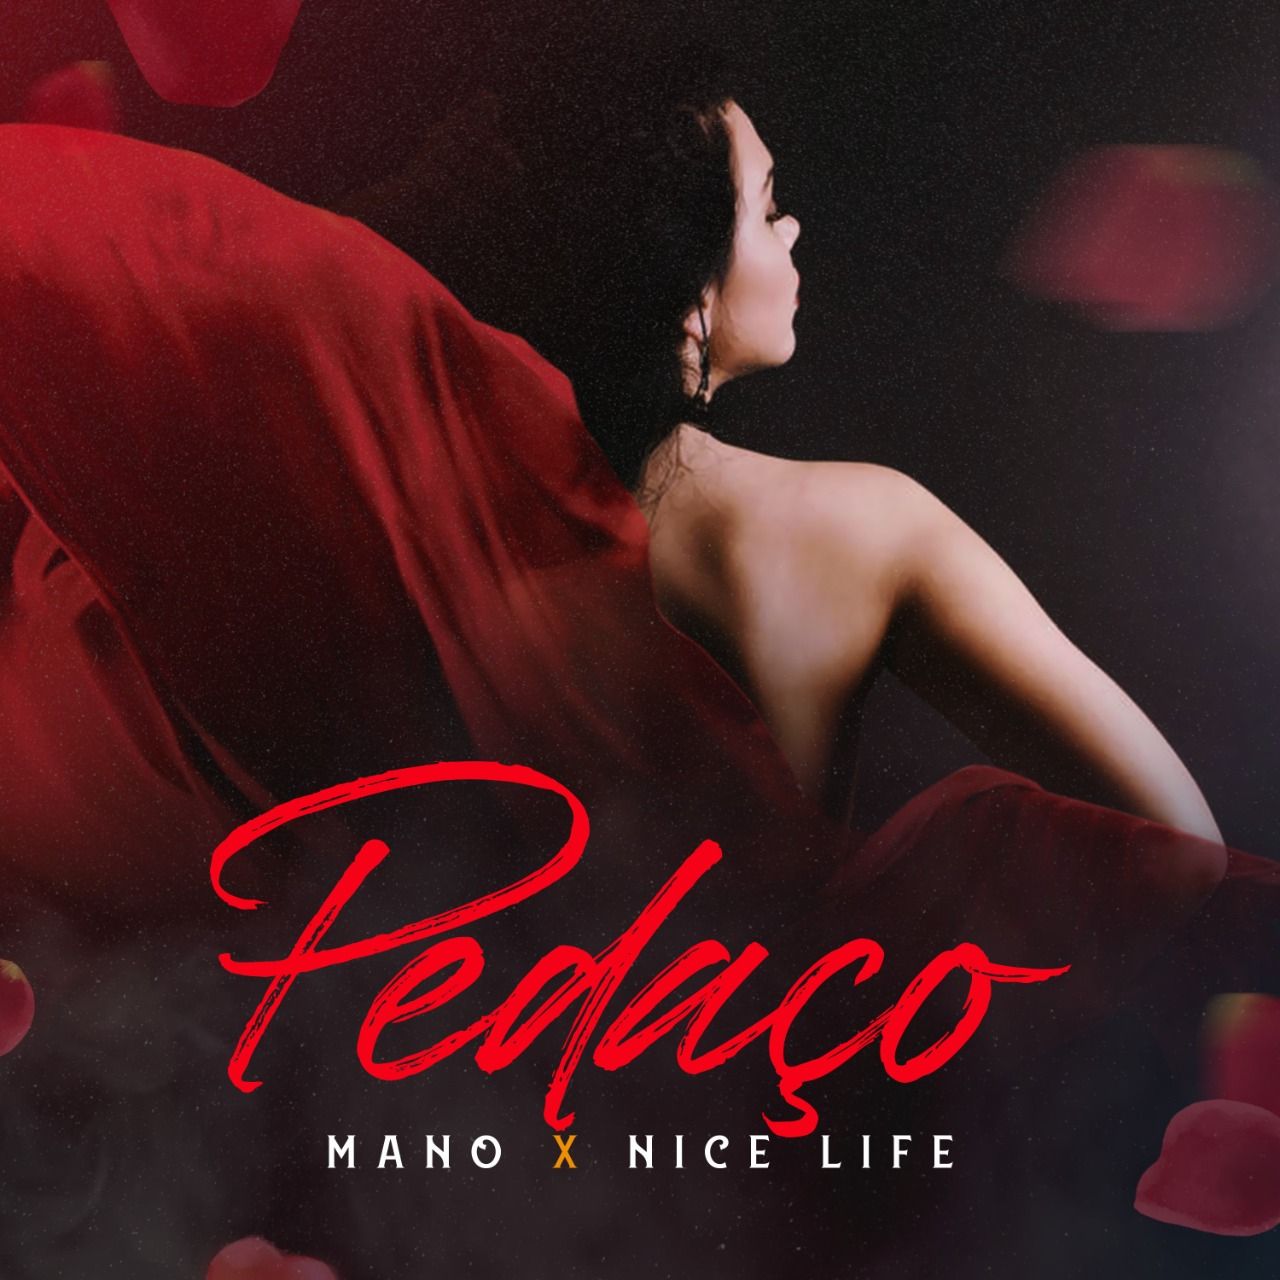 Pobierać Mano X Nice Life - Pedaco